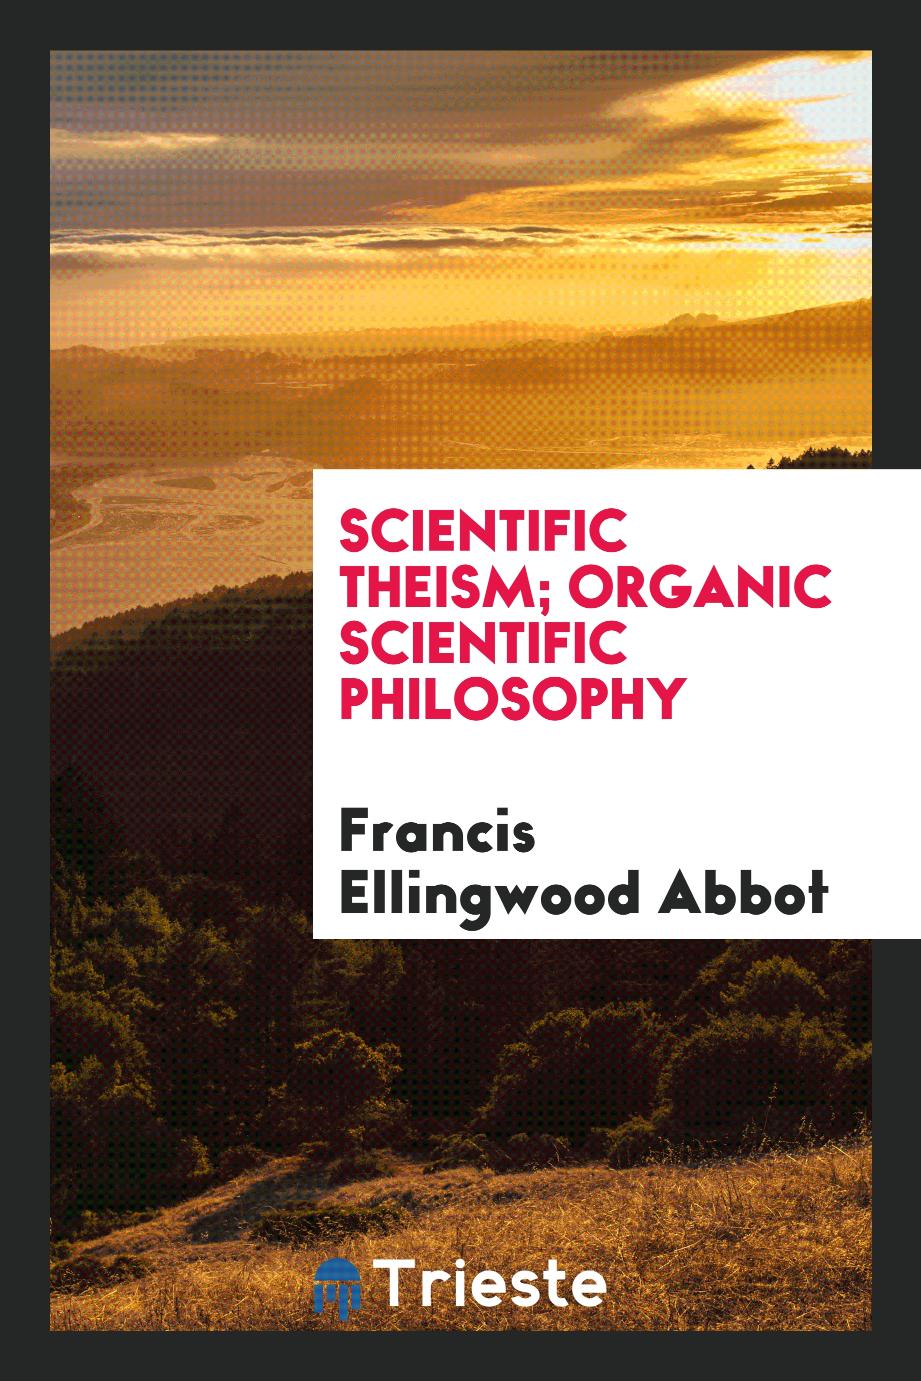 Scientific theism; Organic Scientific Philosophy